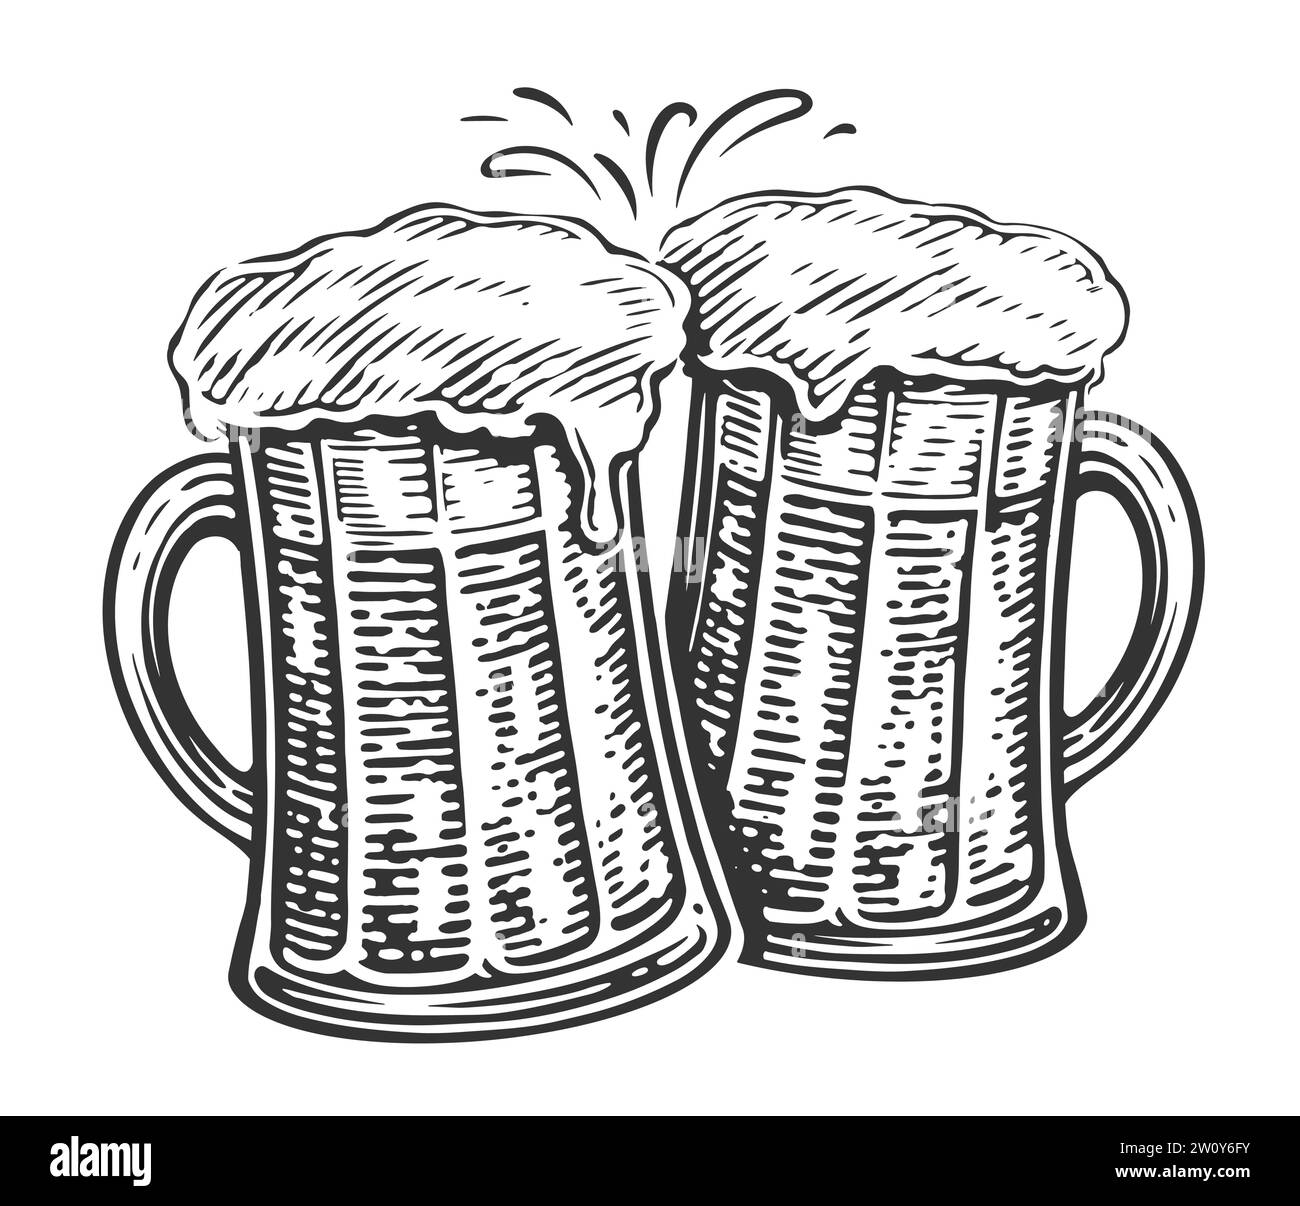 Brindisi, due tazze da birra. Vetri ribattuti pieni di birra e spruzzi di schiuma, illustrazione Illustrazione Vettoriale